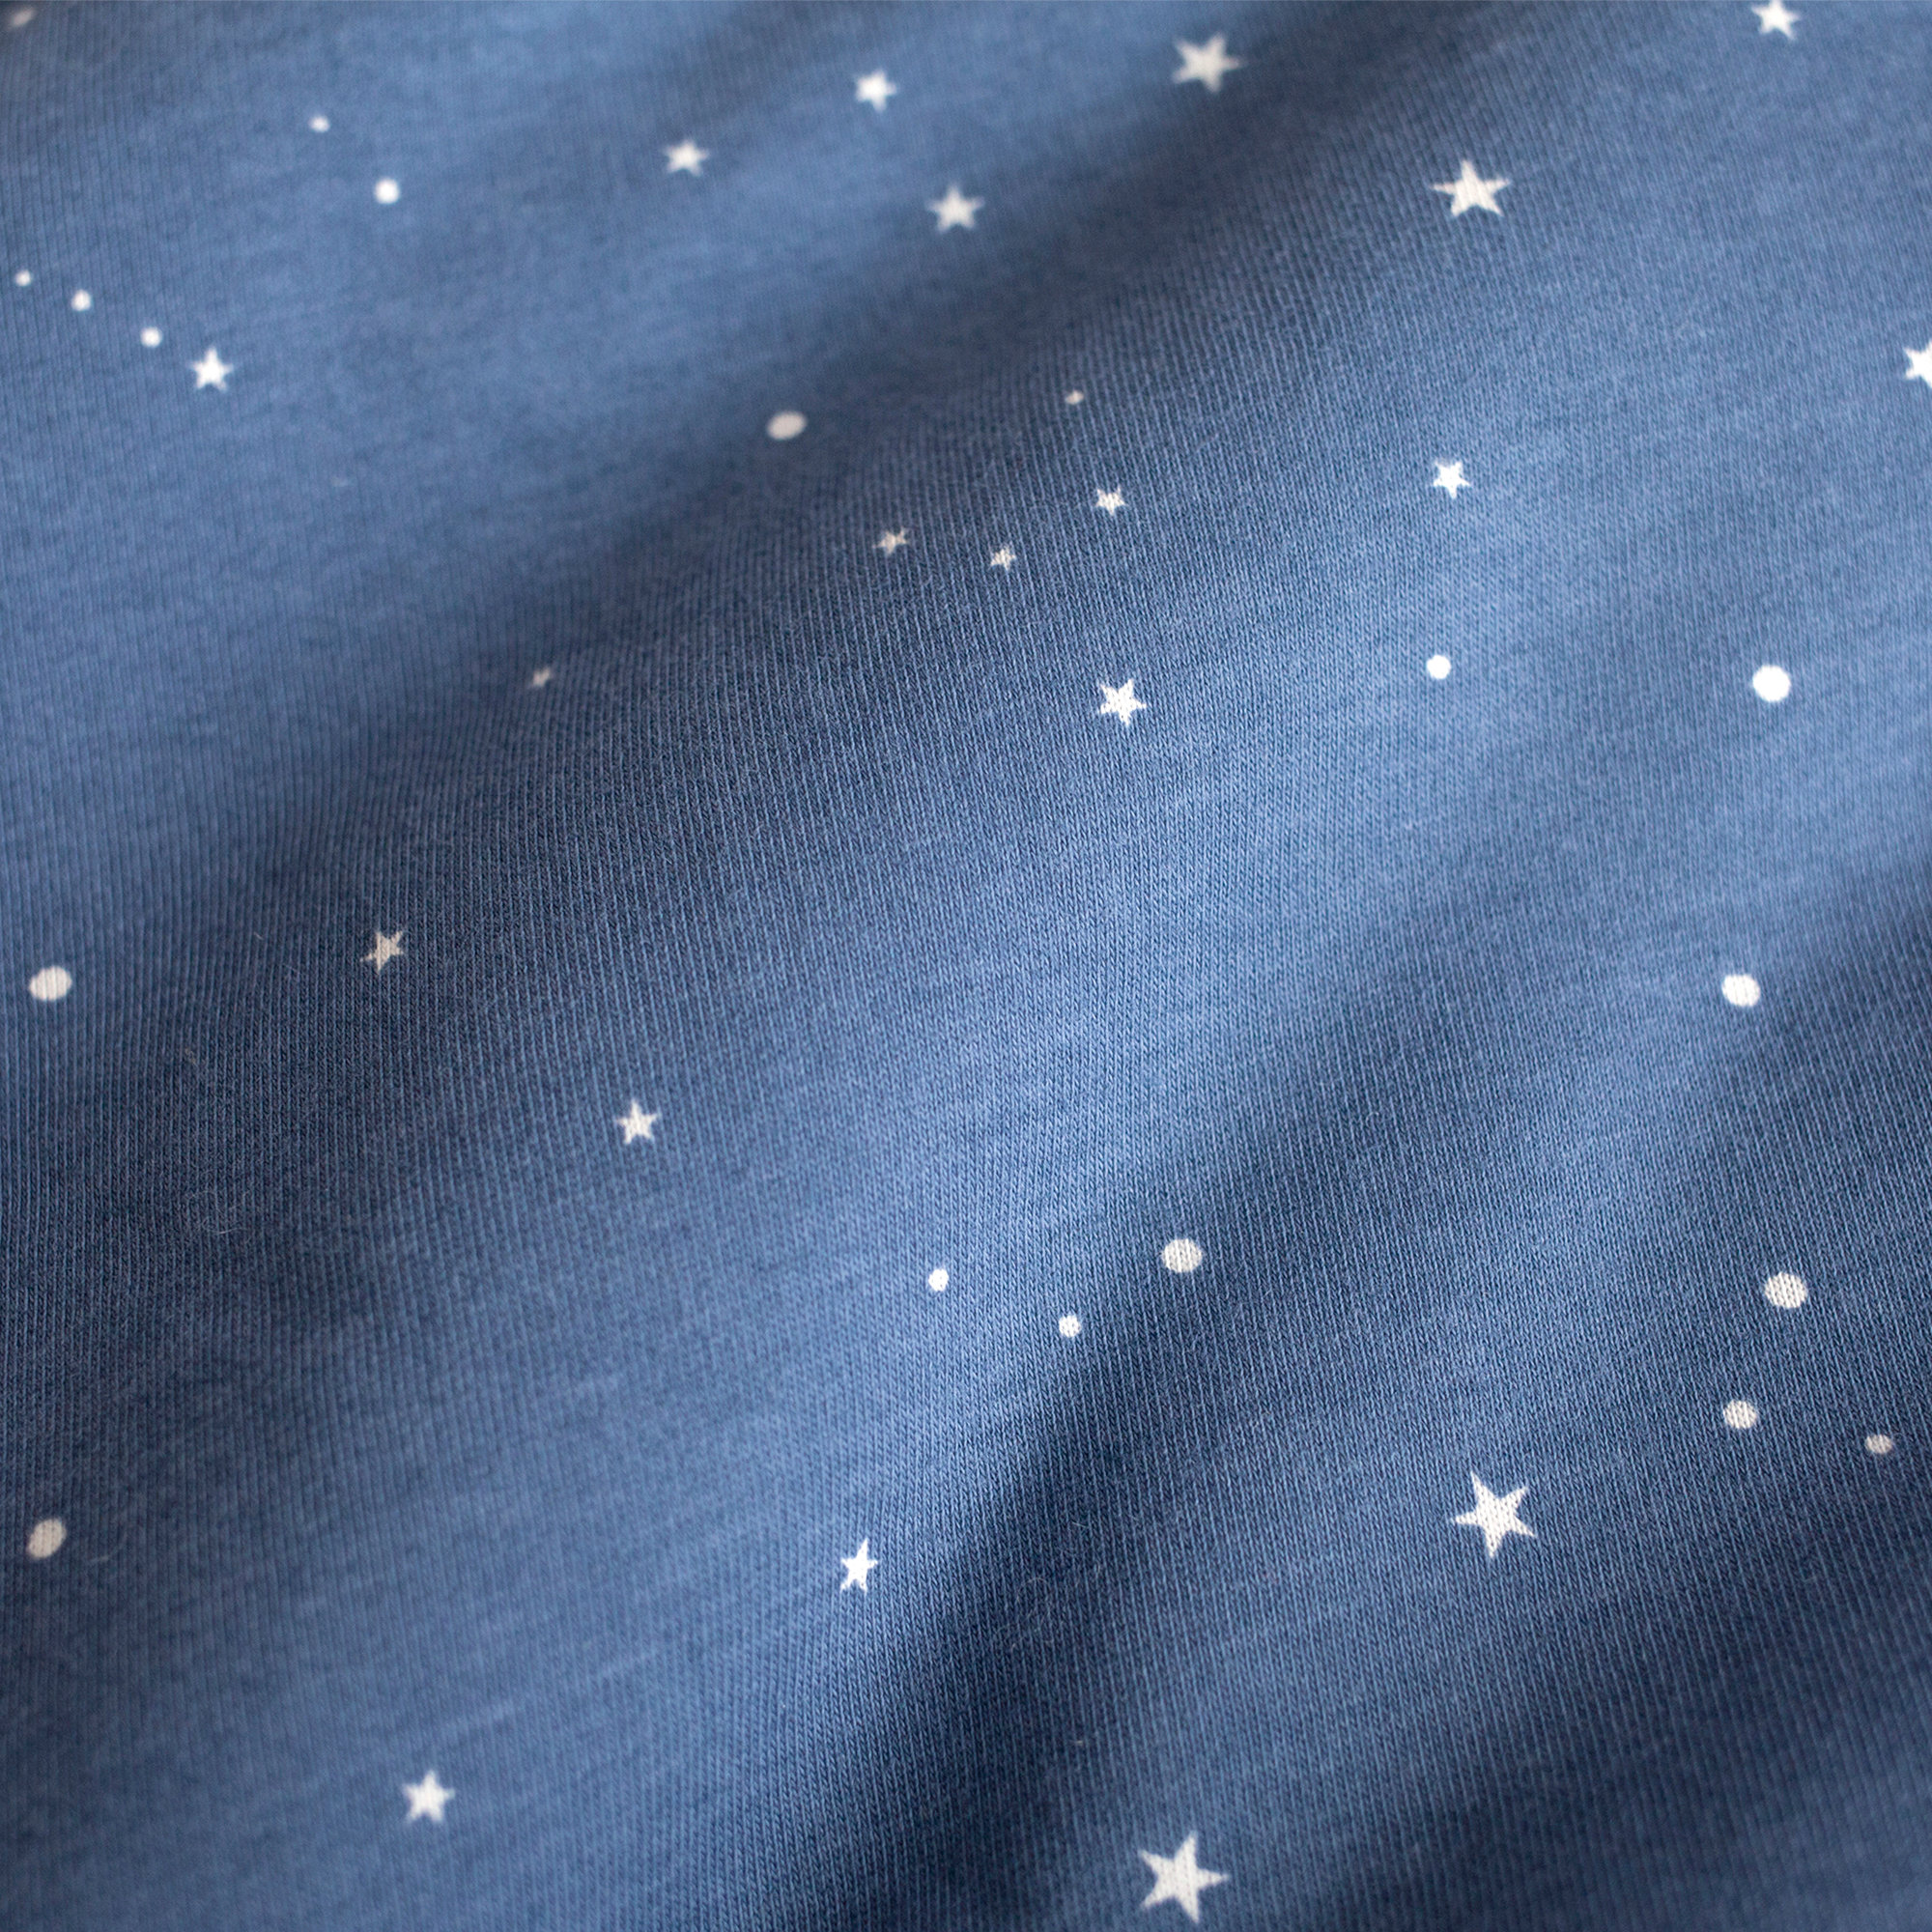 Playpen bumper Pady jersey + jersey 75x95x28cm STARY Little stars print shade[AWARENESS]